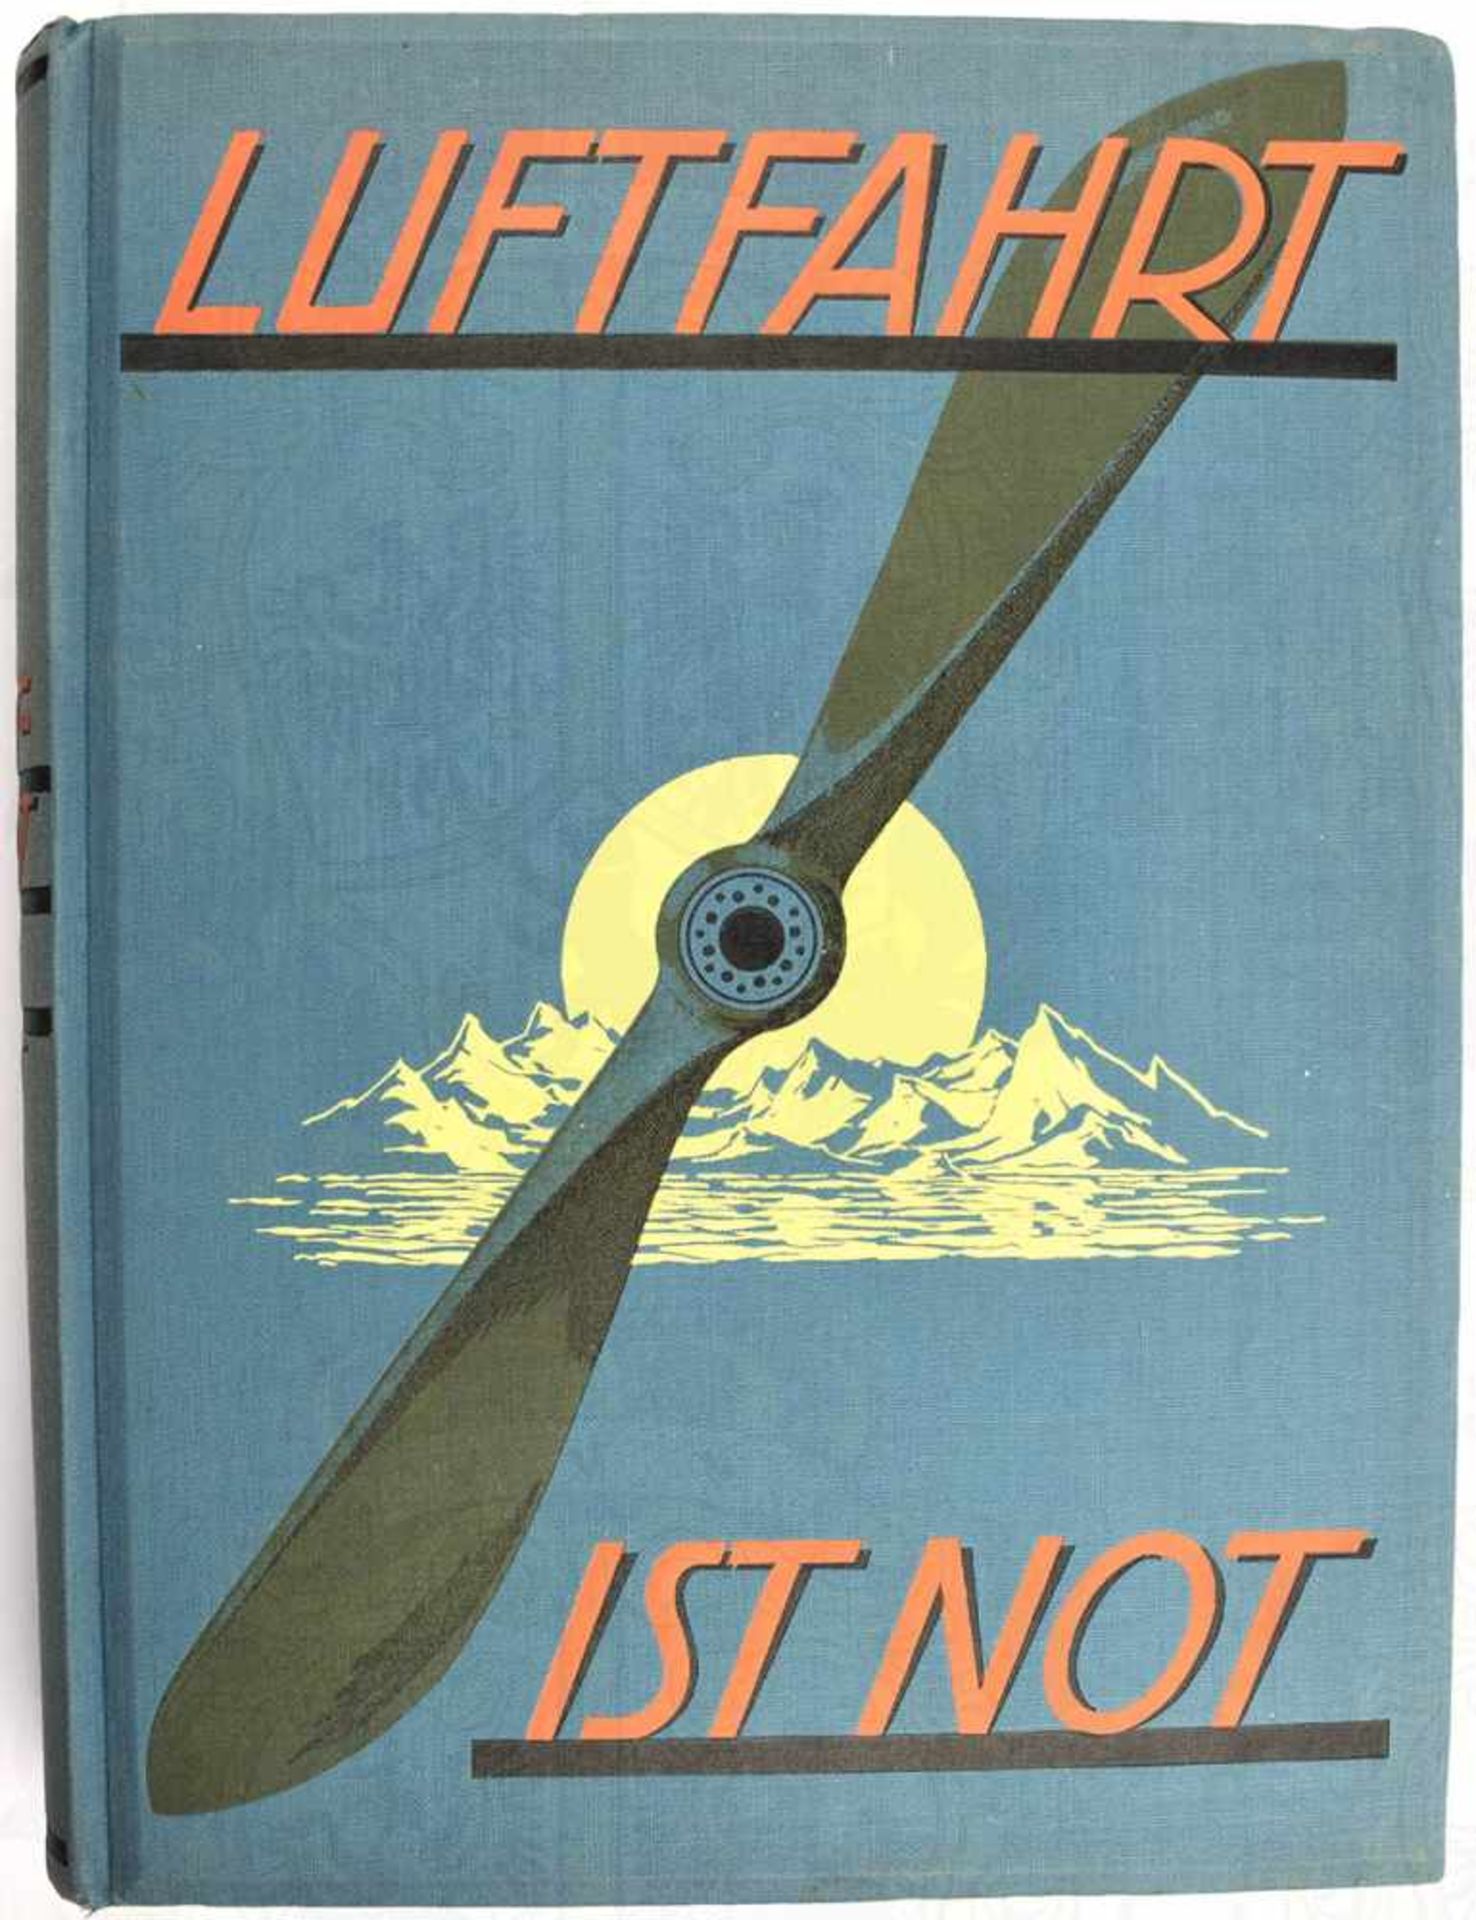 LUFTFAHRT IST NOT!, Hrsg. E. Jünger, Unter dem Protektorat des Deutschen Luftfahrtverbandes, Leipzig